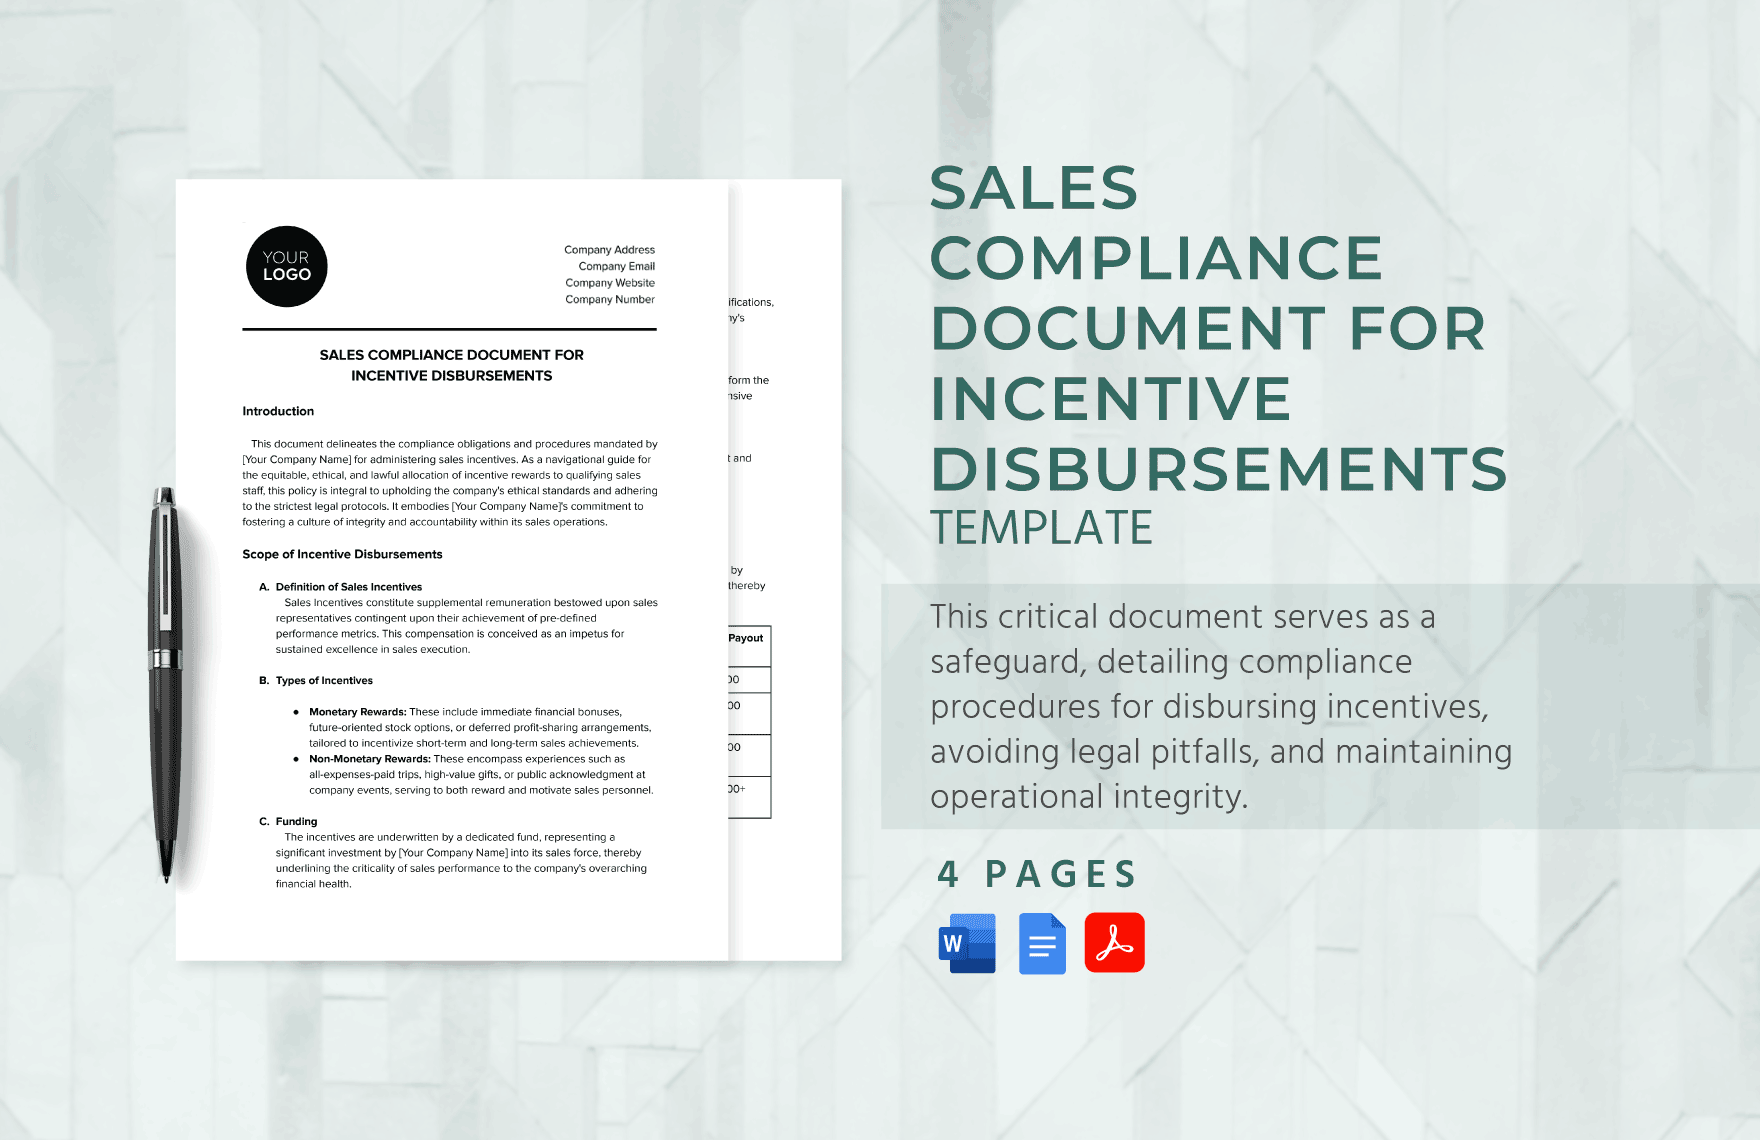 Sales Compliance Document for Incentive Disbursements Template